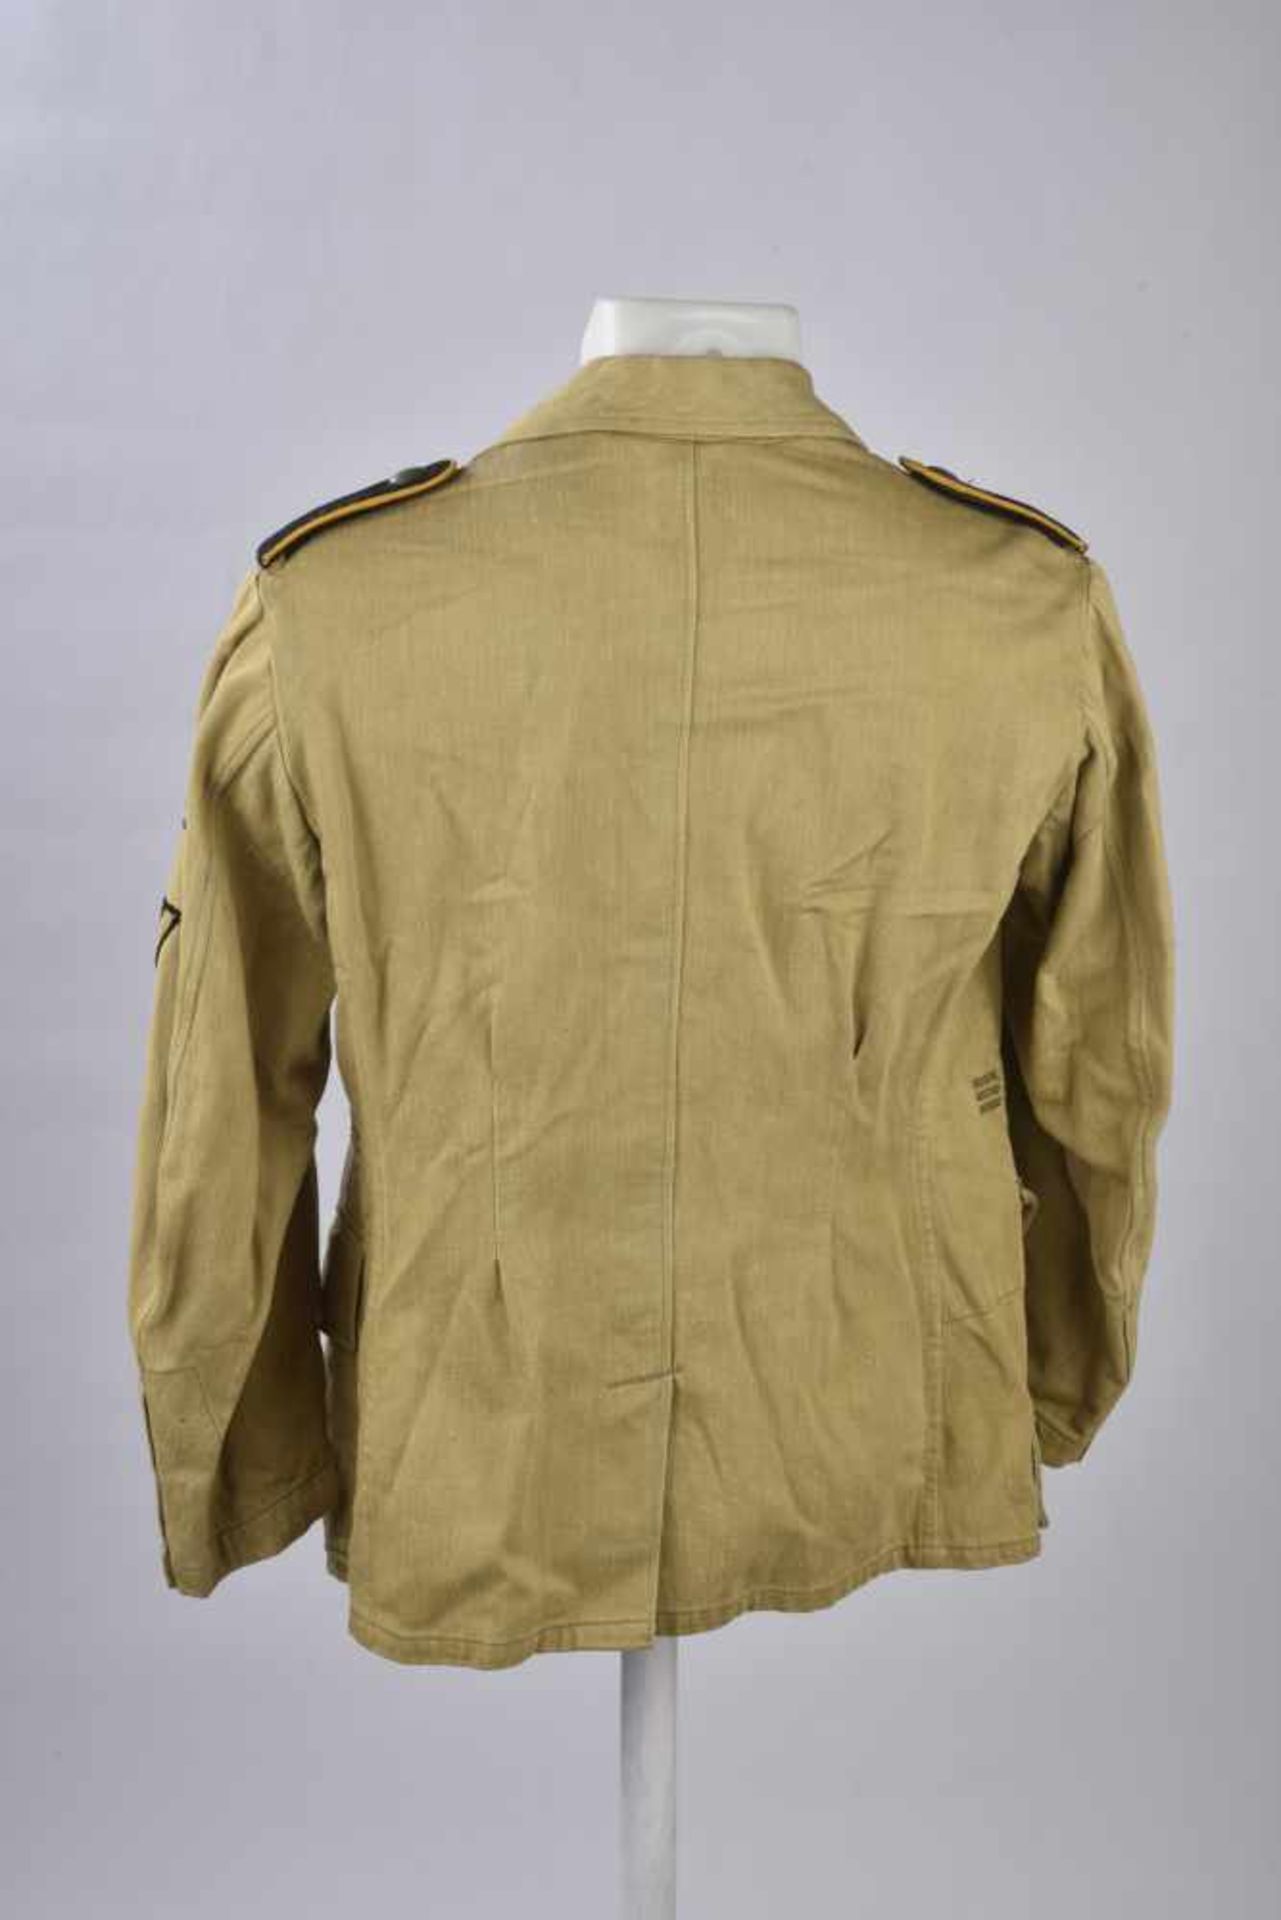 Veste tropical de la Waffen SSVareuse en tissu coton sable, tous les boutons sont présents. - Bild 4 aus 4